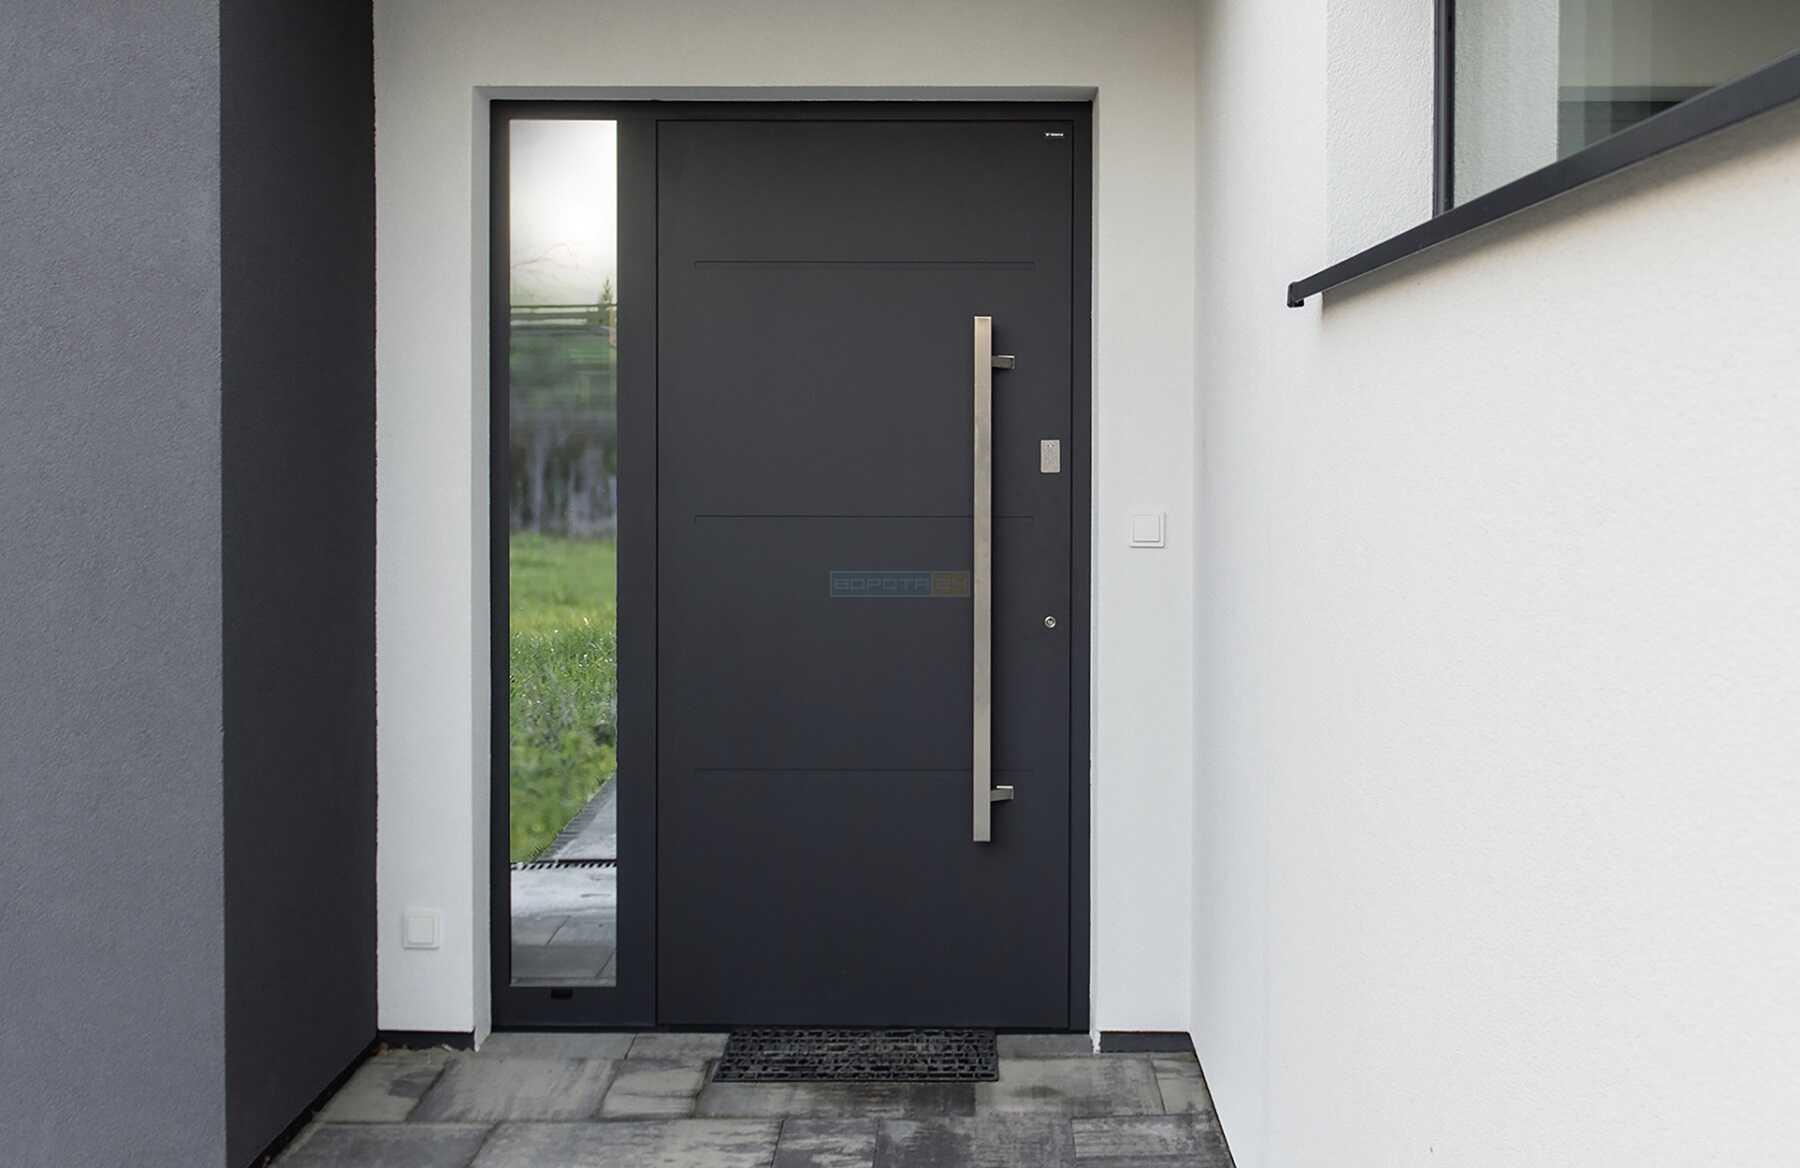 Сучасні красиві вуличні двері до приватного будинку ЛУЦЬК - європейський виробник RYTERNA, WISNIOWSKI - алюмінієві теплі зовнішні вхідні групи з вікнами, склом